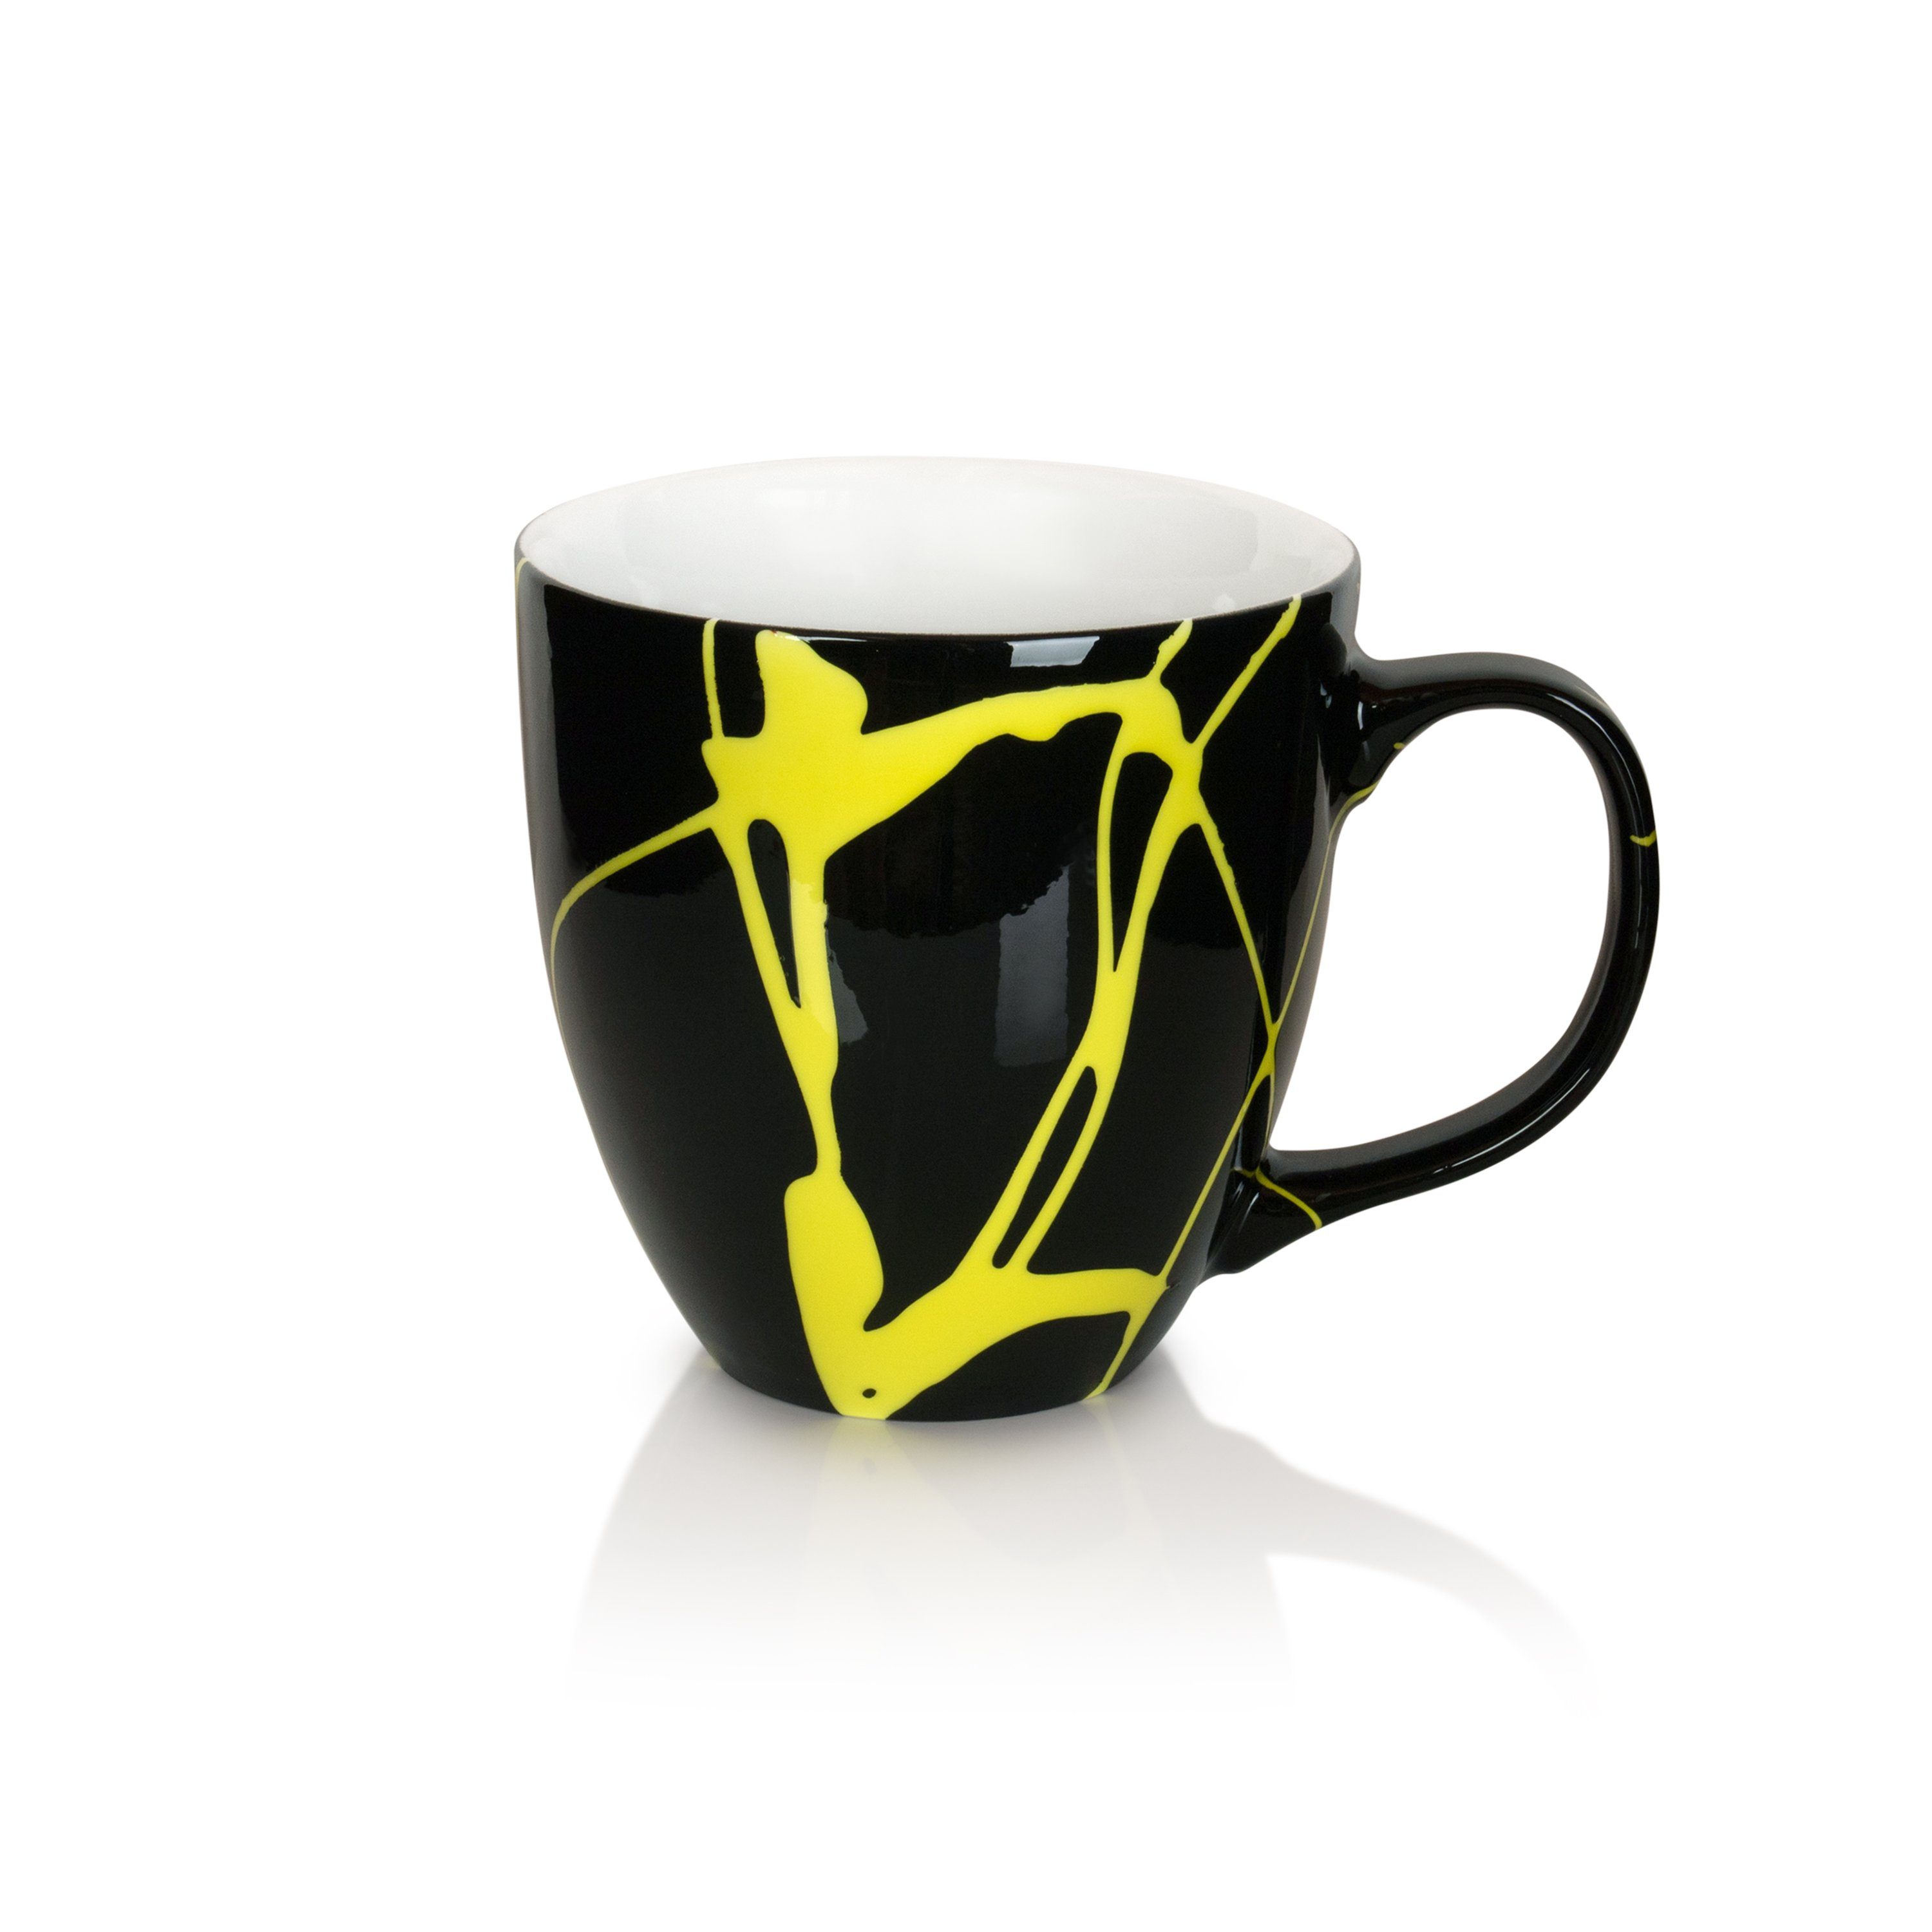 Mahlwerck Manufaktur Teeschale Jumbotasse, Porzellan, Freaky klimaneutral 100% Yellow